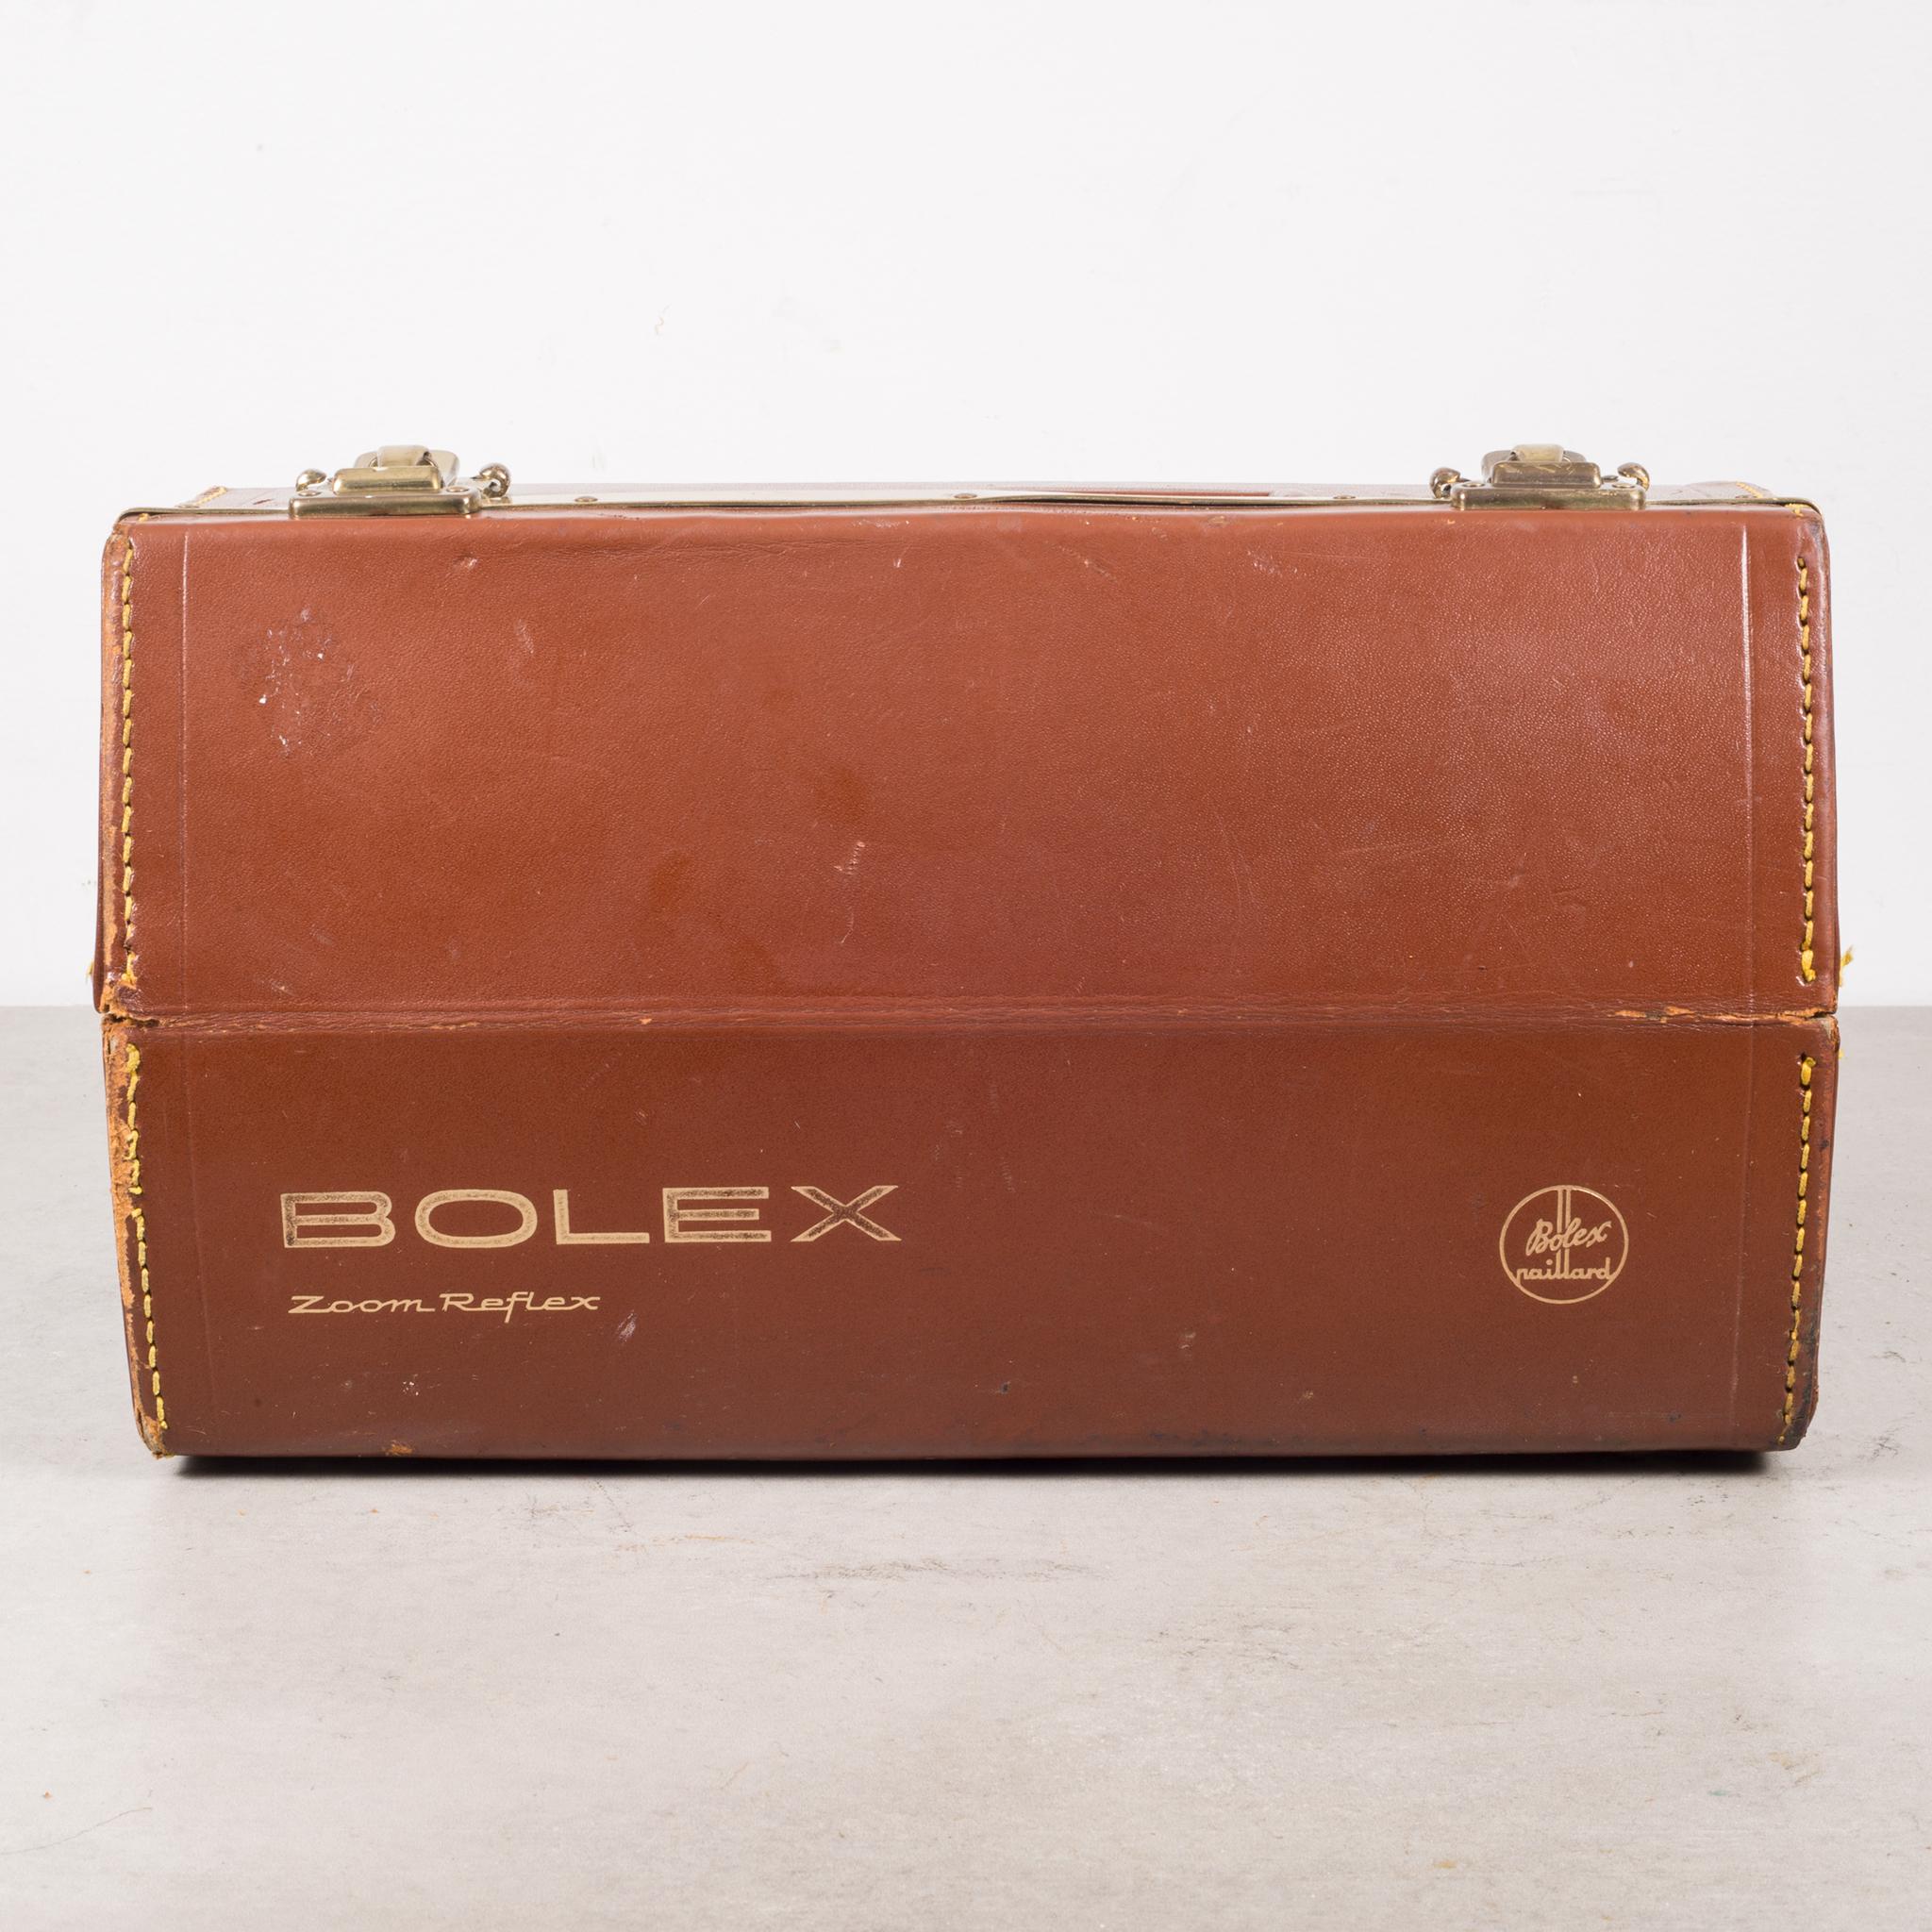 20th Century Bolex Zoom Reflex P1 Movie Camera and Leather Case, circa 1961